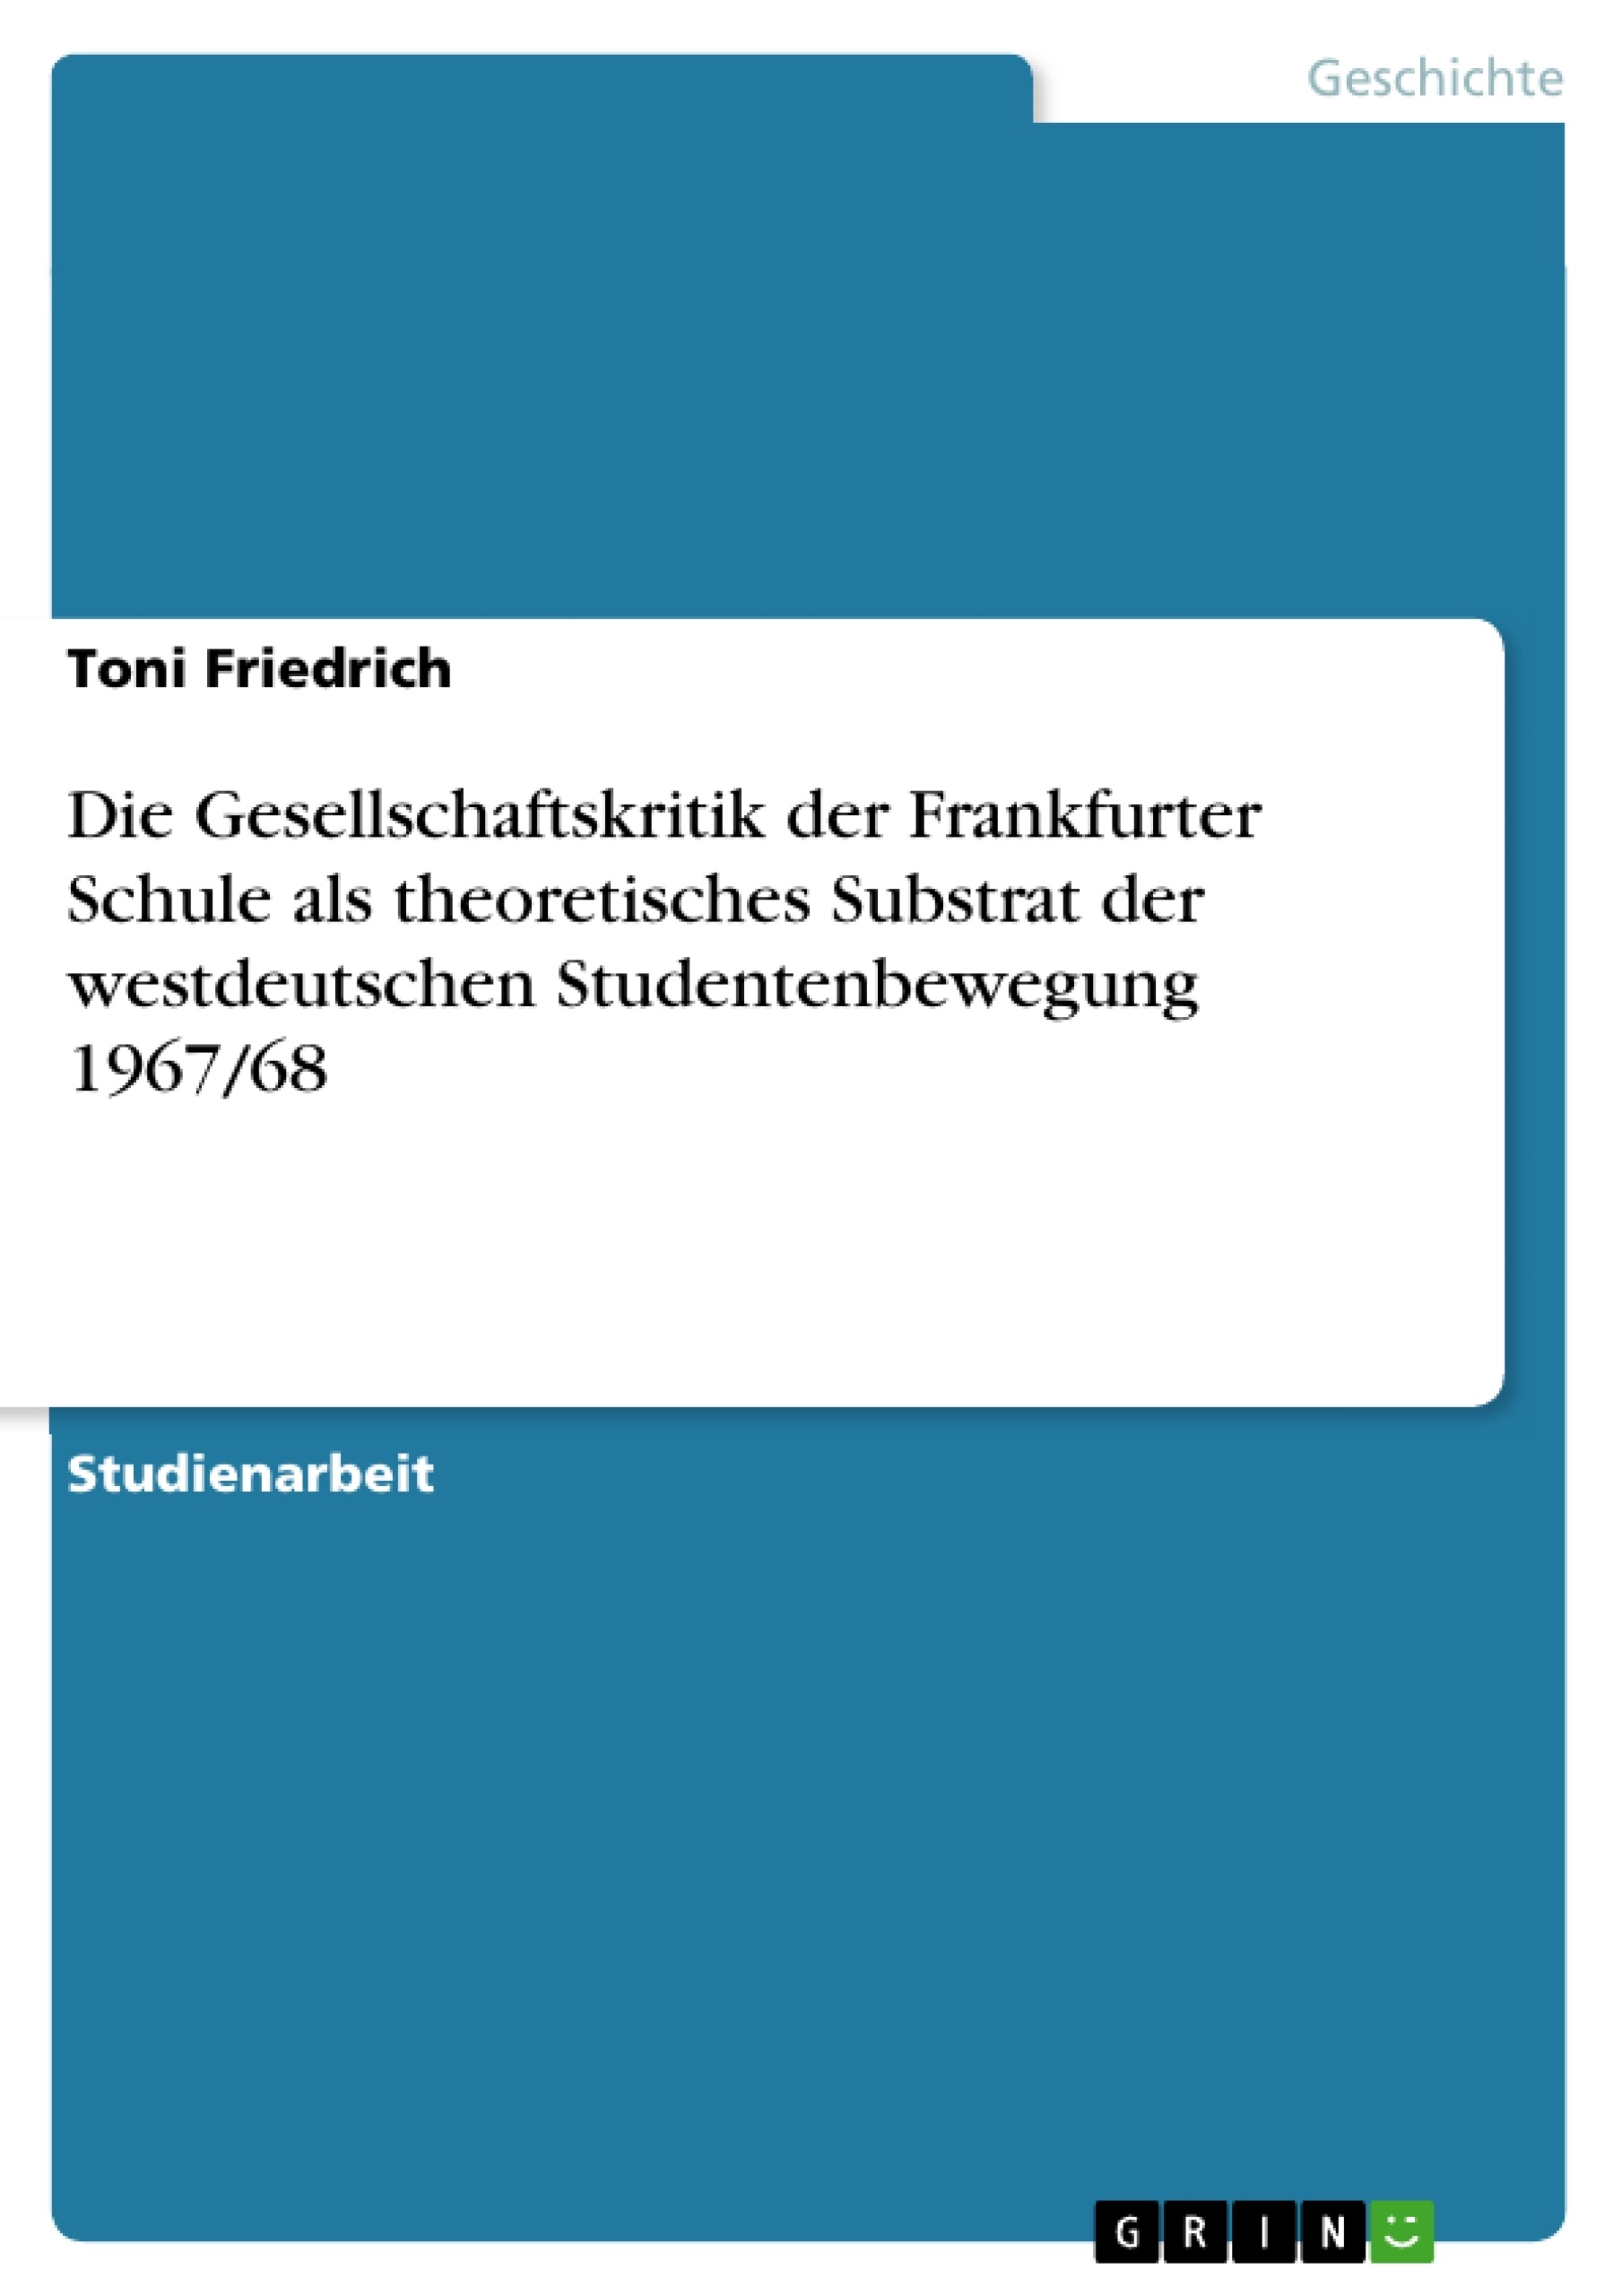 Título: Die Gesellschaftskritik der Frankfurter Schule als theoretisches Substrat der westdeutschen Studentenbewegung 1967/68